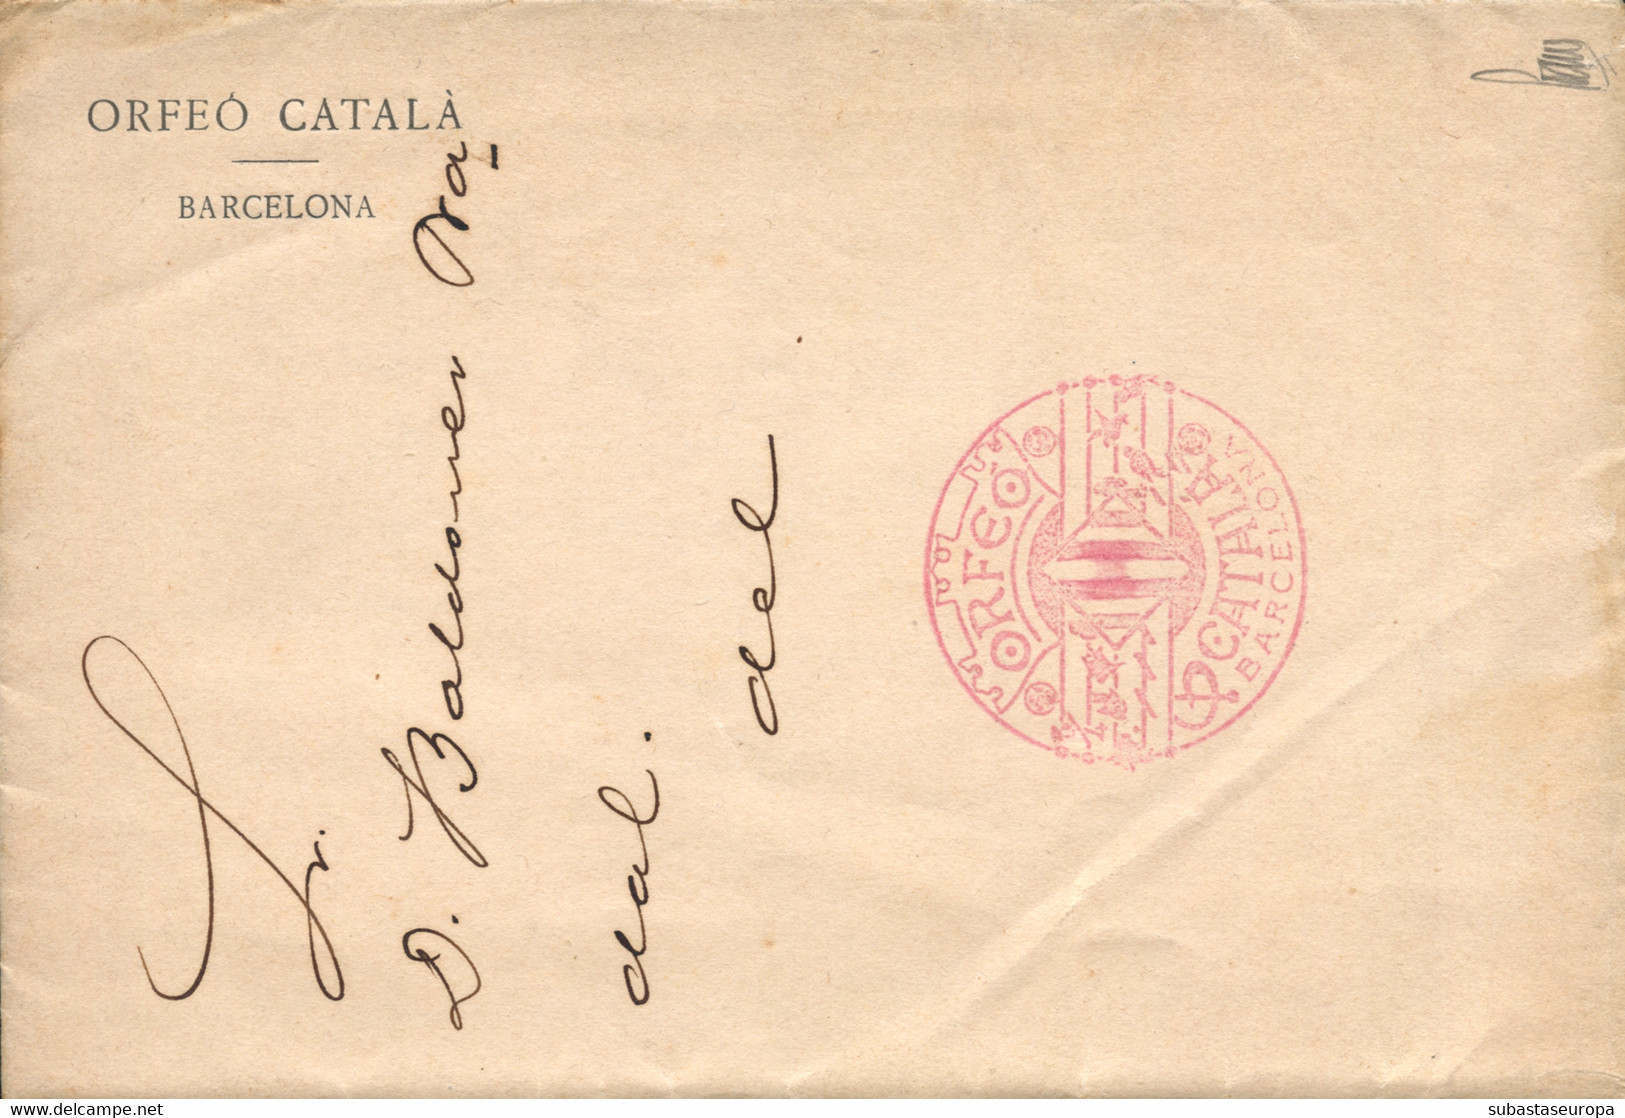 1913 (1 SEP). Carta Circulada Interior De Barcelona, Con Membrete Impreso "Orfeó Català" Y Franquicia En Rojo "ORFEO/CAT - Postage Free